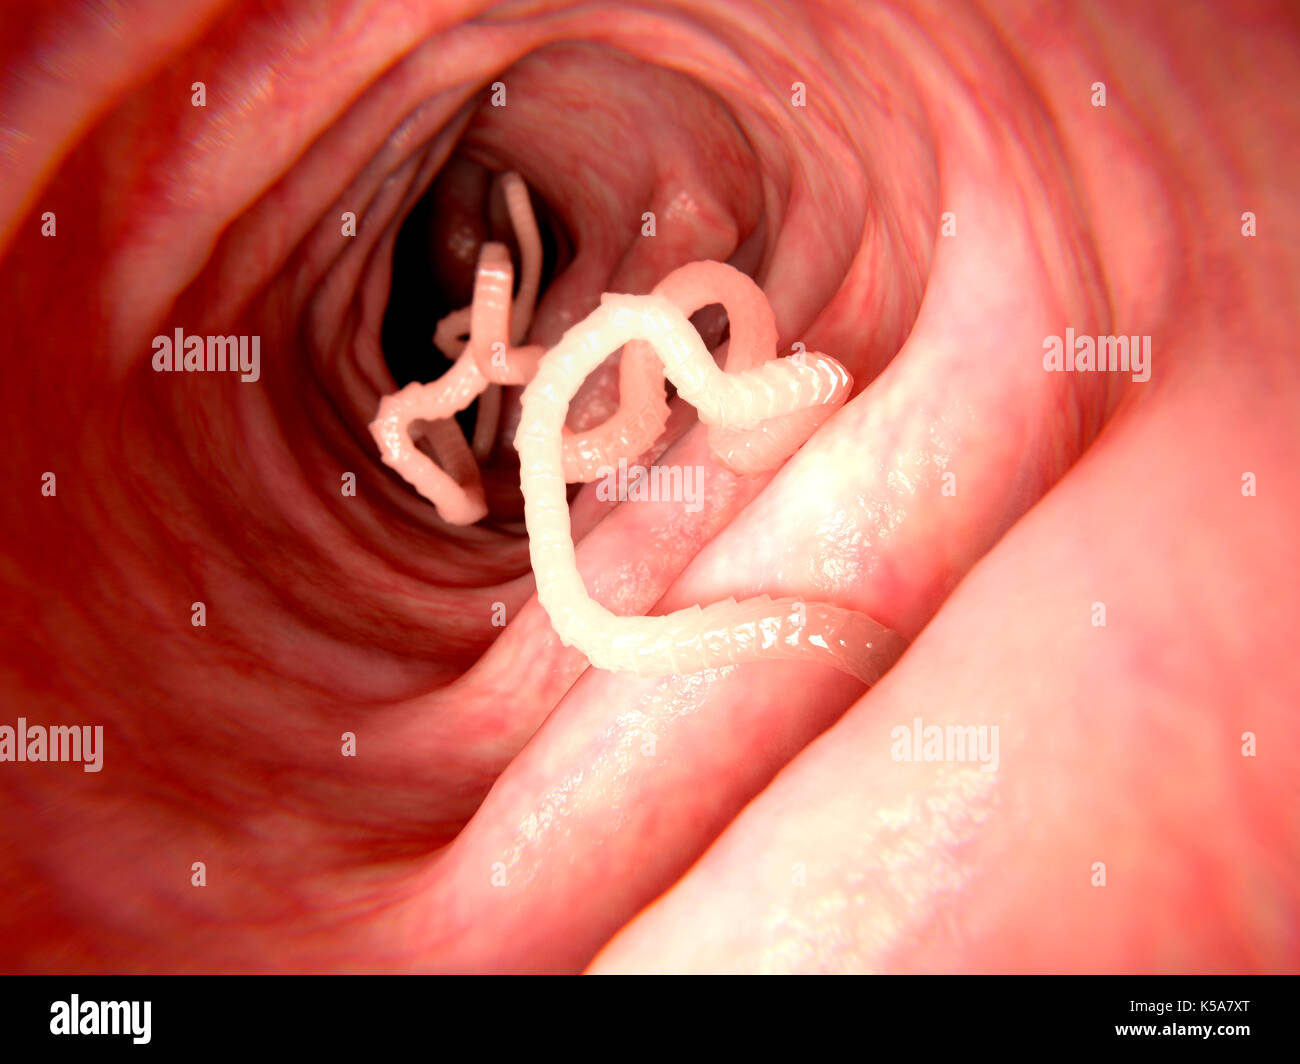 Abbildung: ein bandwurm im menschlichen Darm. Bandwürmer (Taenia sp.) sind Parasiten, die im menschlichen Darm bewohnen. Sie selbst an der Innenseite der Darm Anker und Nährstoffe durch ihren Körper wand absorbieren. Bandwürmer kann bis zu mehreren Metern in der Länge wachsen, aber den Befall nicht unbedingt Symptome verursachen. Stockfoto